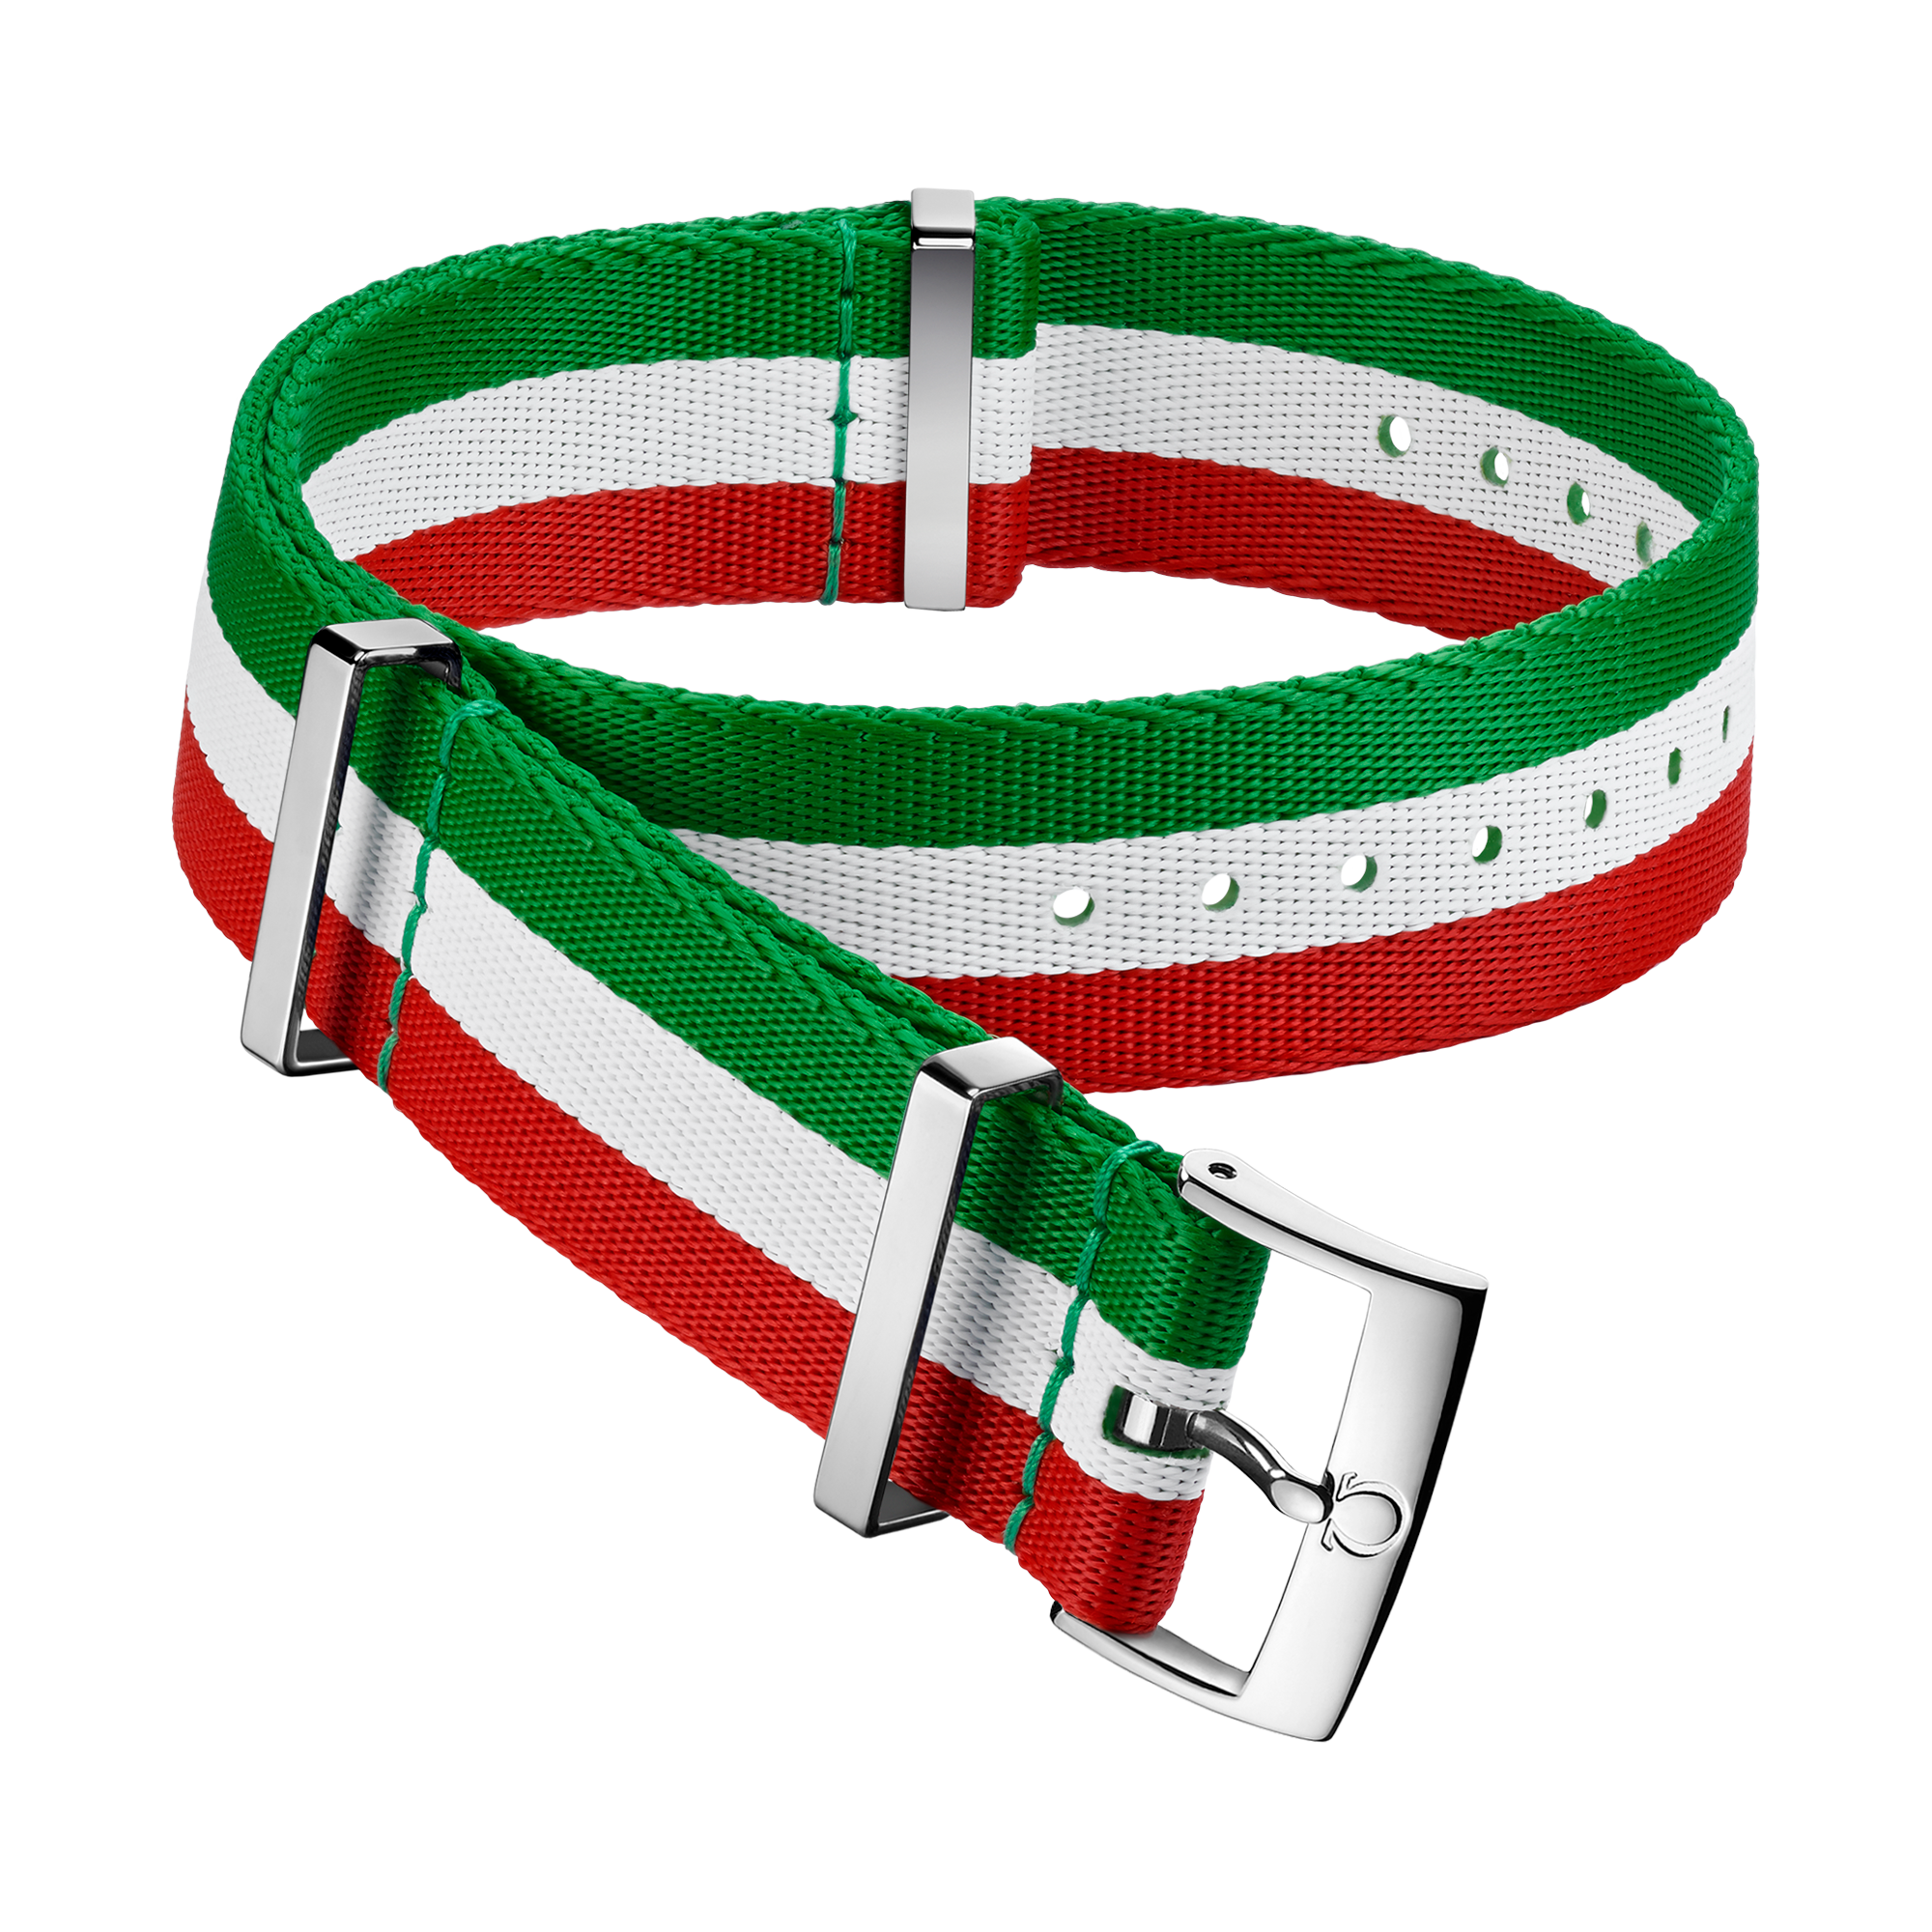 Cinturino NATO - Cinturino in poliammide verde, bianco e rosso con 3 strisce - 031CWZ010656